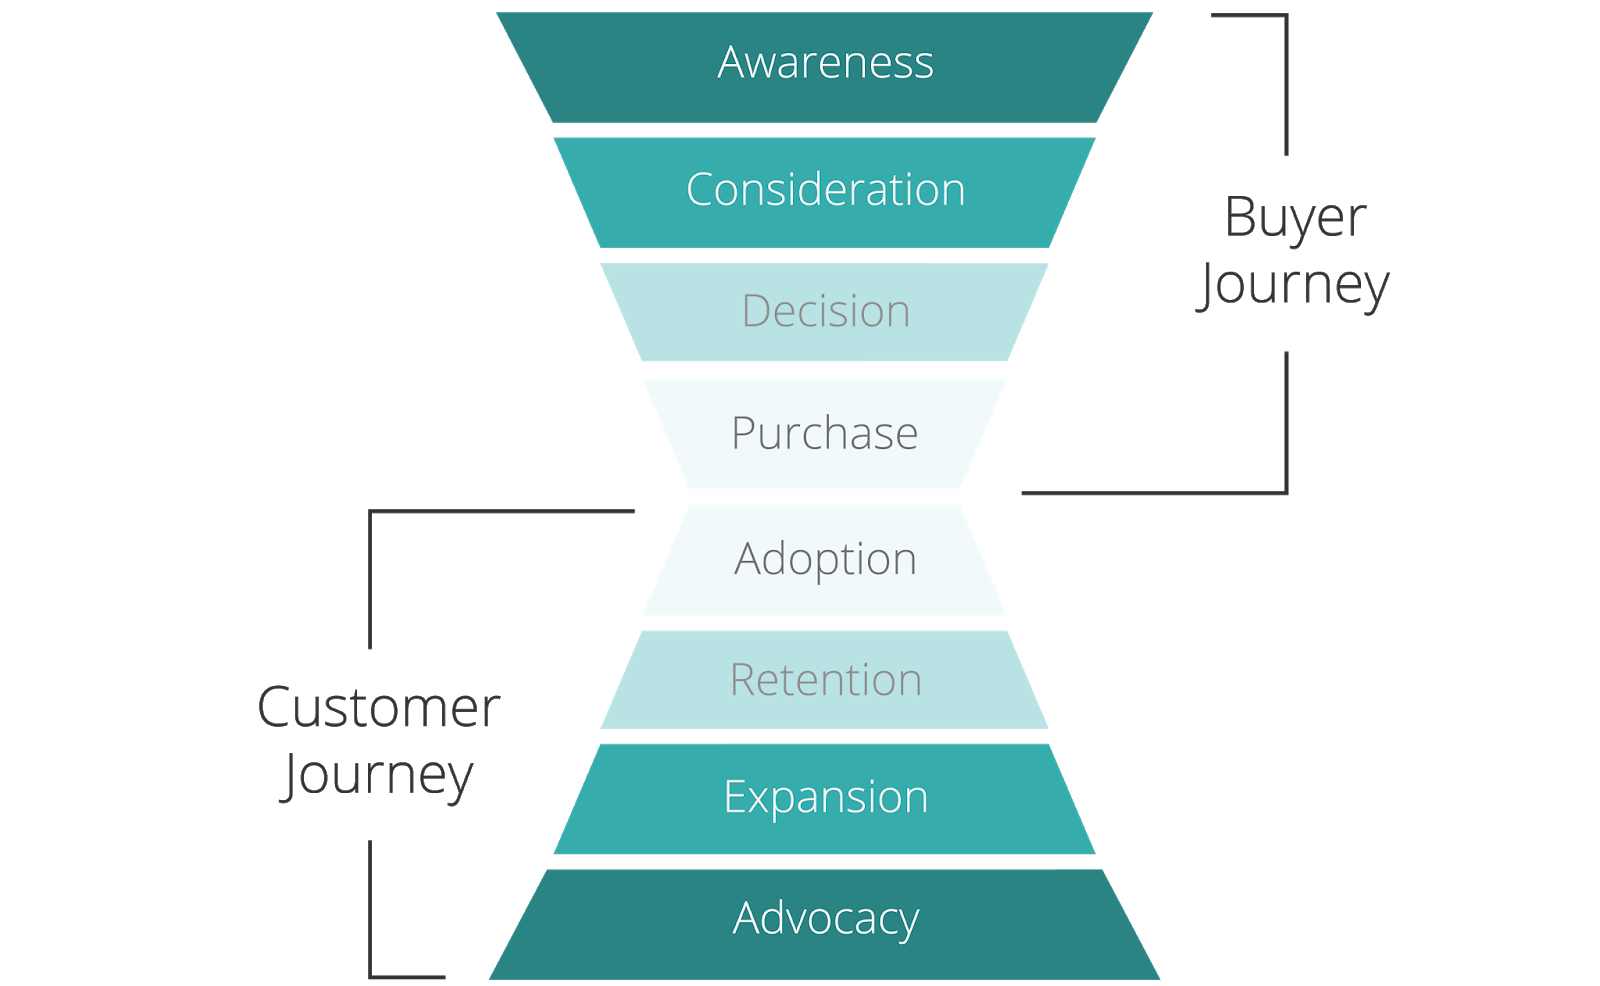 Een vizualizatie van de klant's buyer journey. De stappen in de funnel zijn Awareness, Consideration, Decision, Purchase, Adoption, Retention, Expansion, and Advocacy.